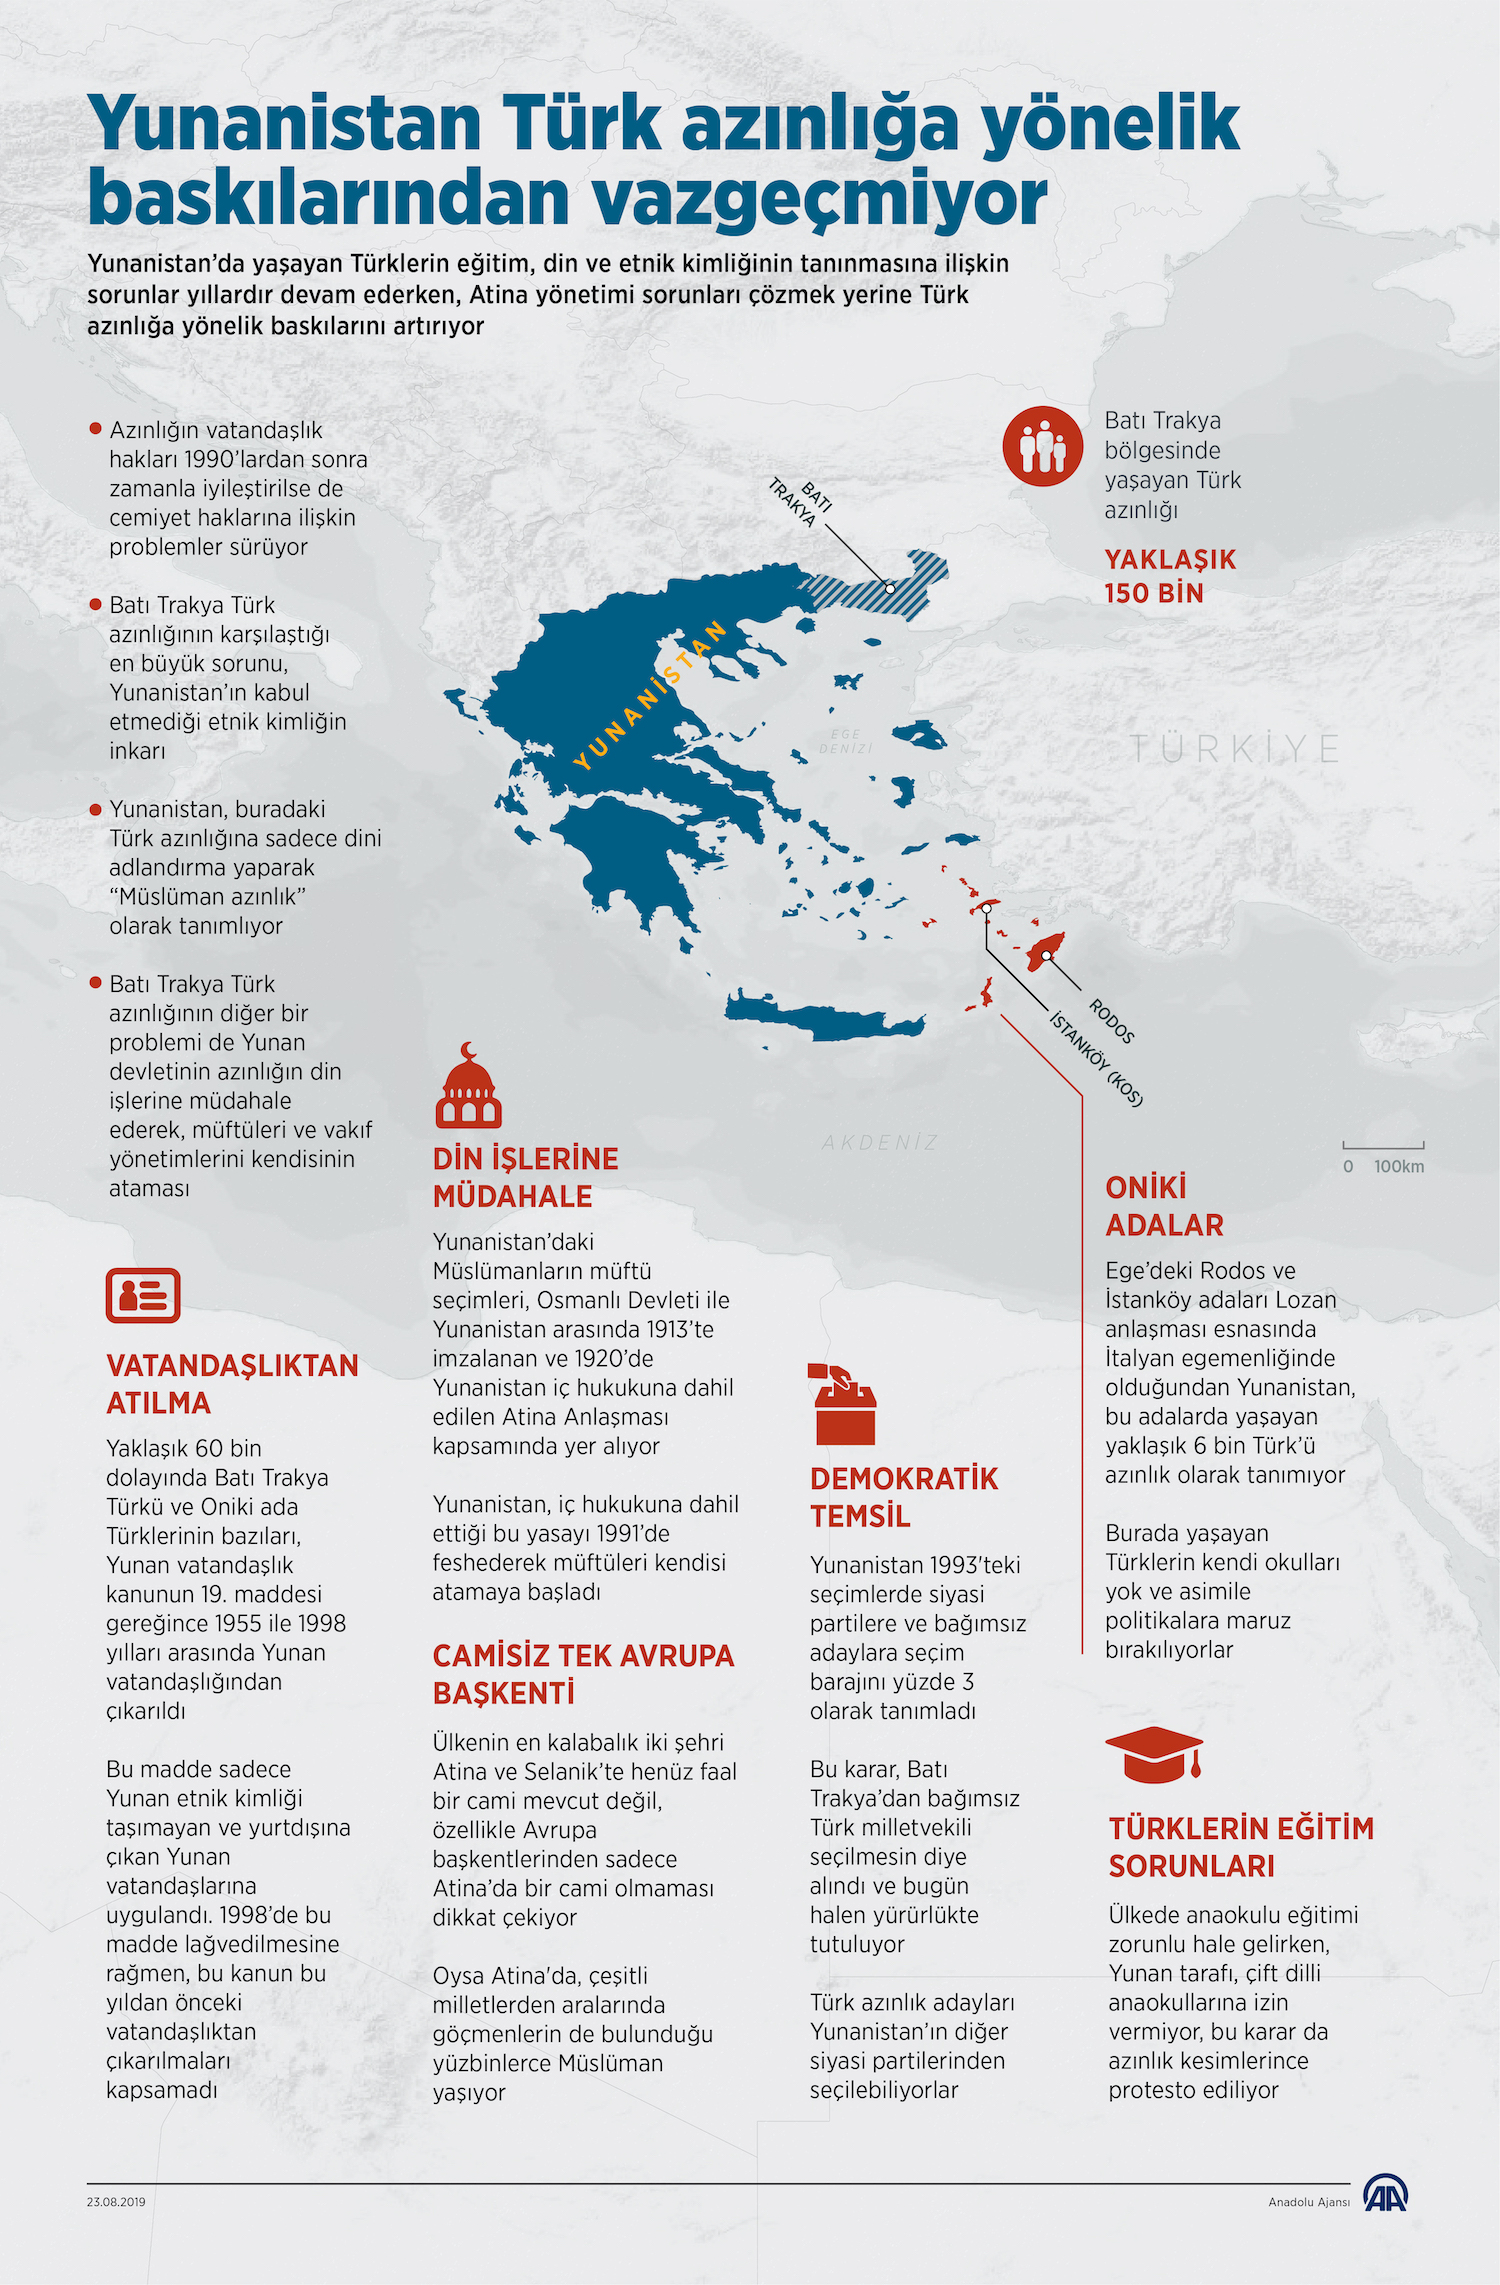 Yunanistan Türk Azınlığına Yönelik Baskılardan Vazgeçmiyor / İnfografik